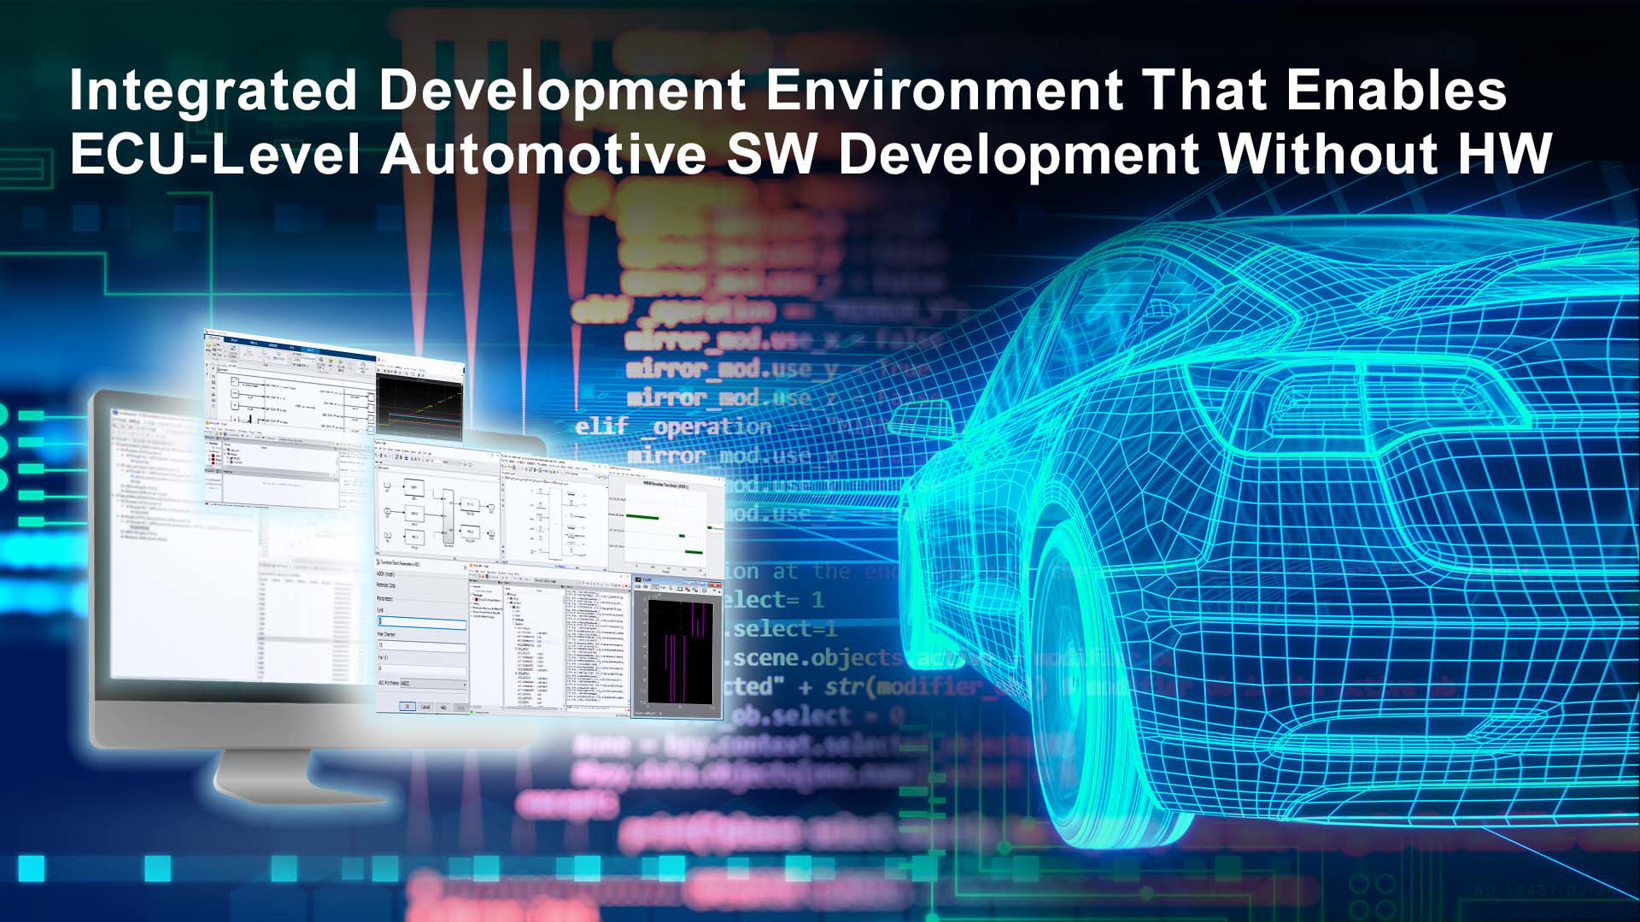 瑞萨电子推出集成开发环境 无需硬件即可实现ECU级汽车软件开发